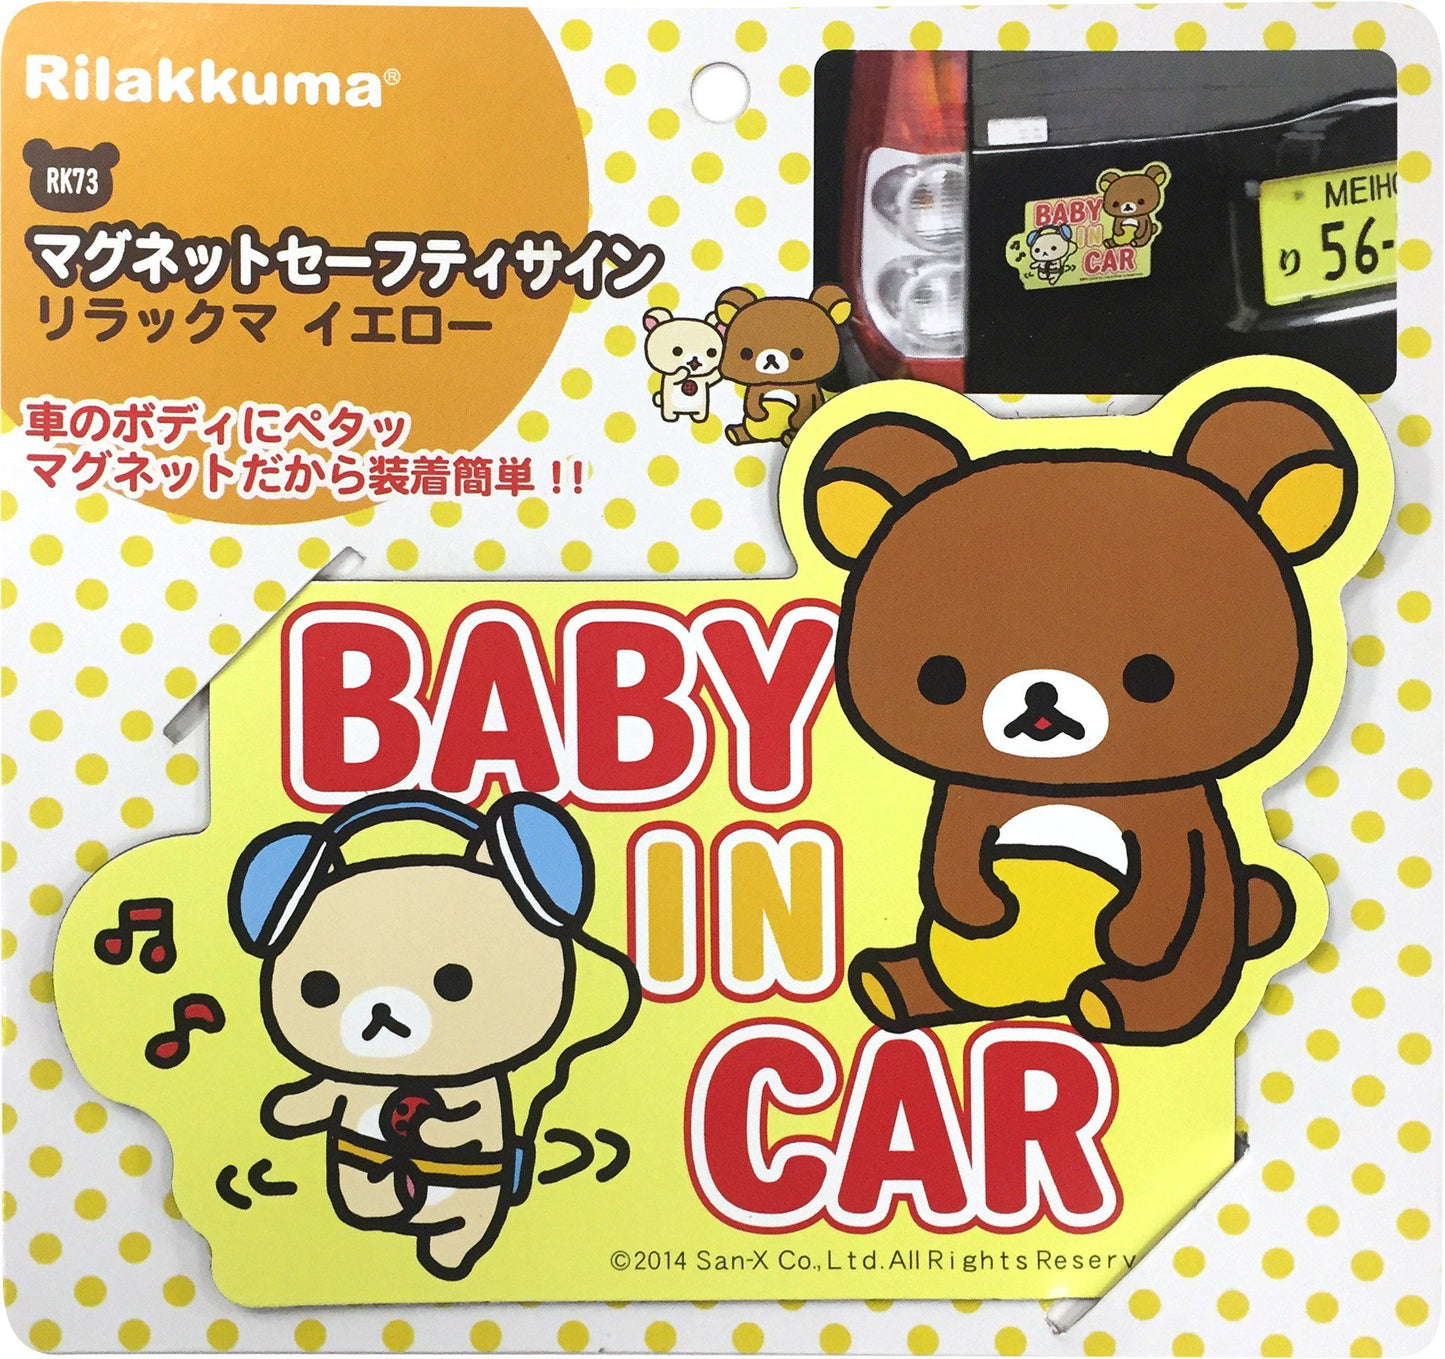 鬆弛熊外貼紙 Baby In Car RK73 Rilakkuma Baby In Car RK73